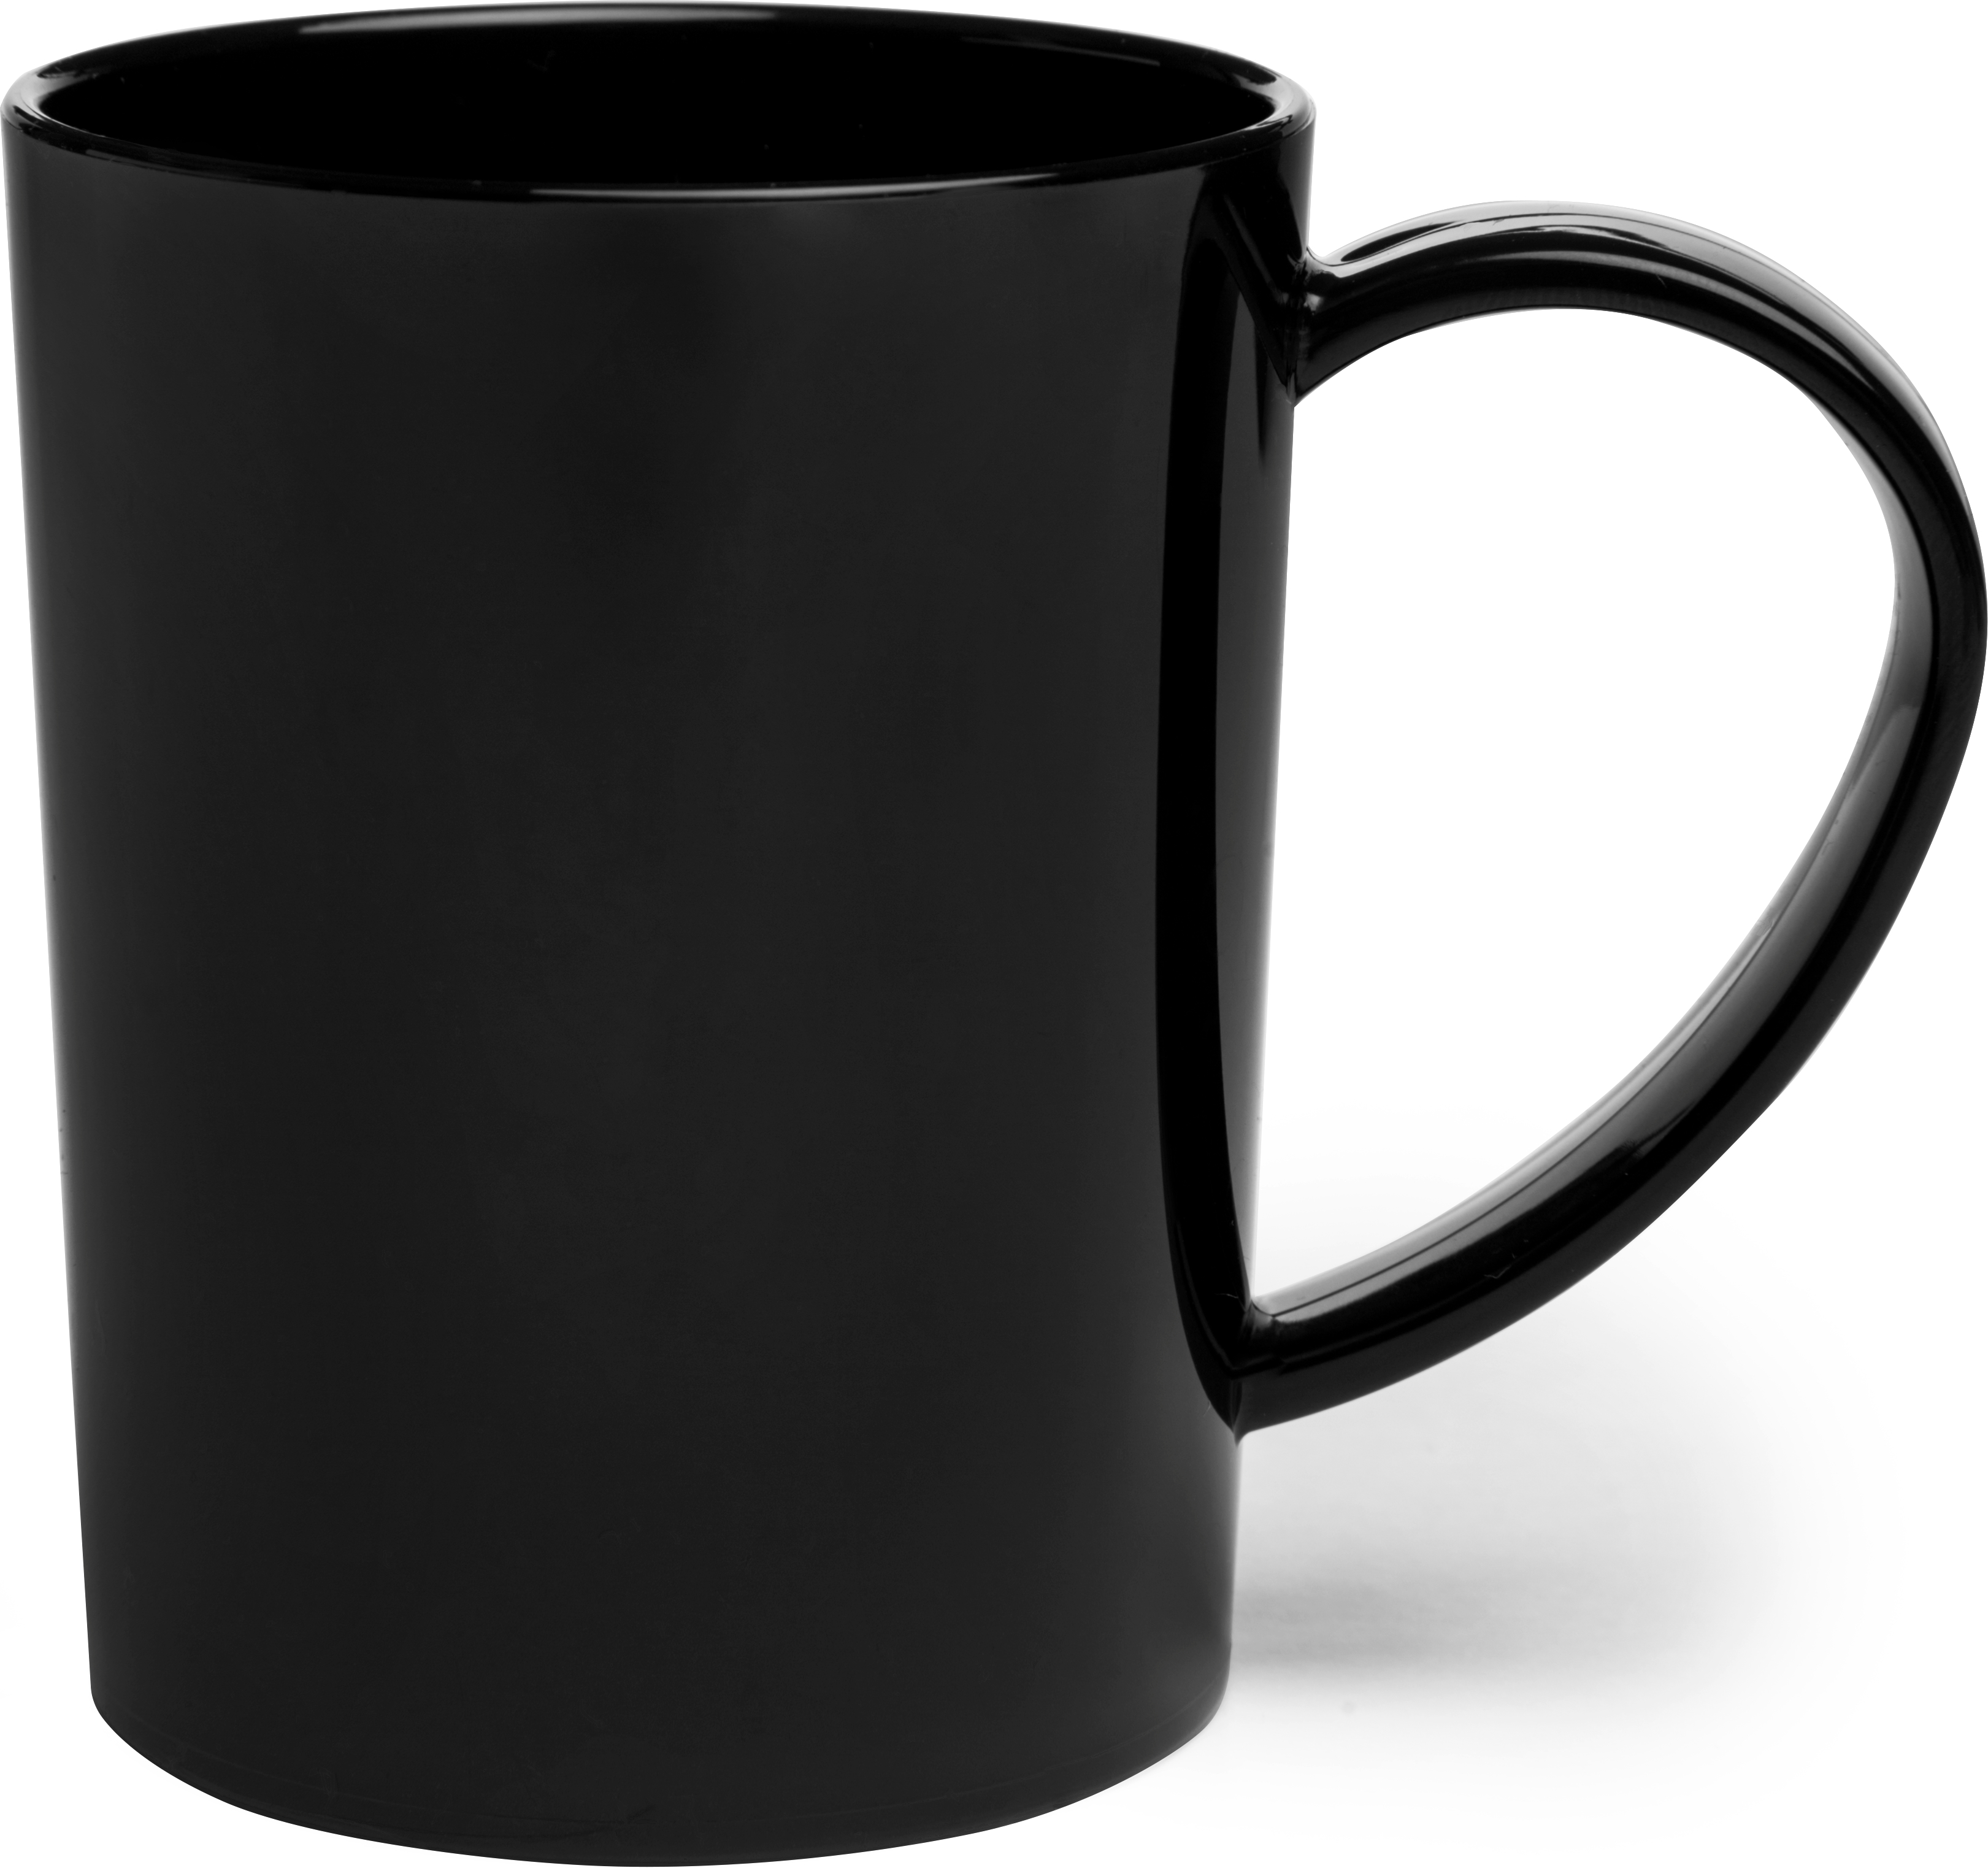 Carlisle Mug 8 oz - Black